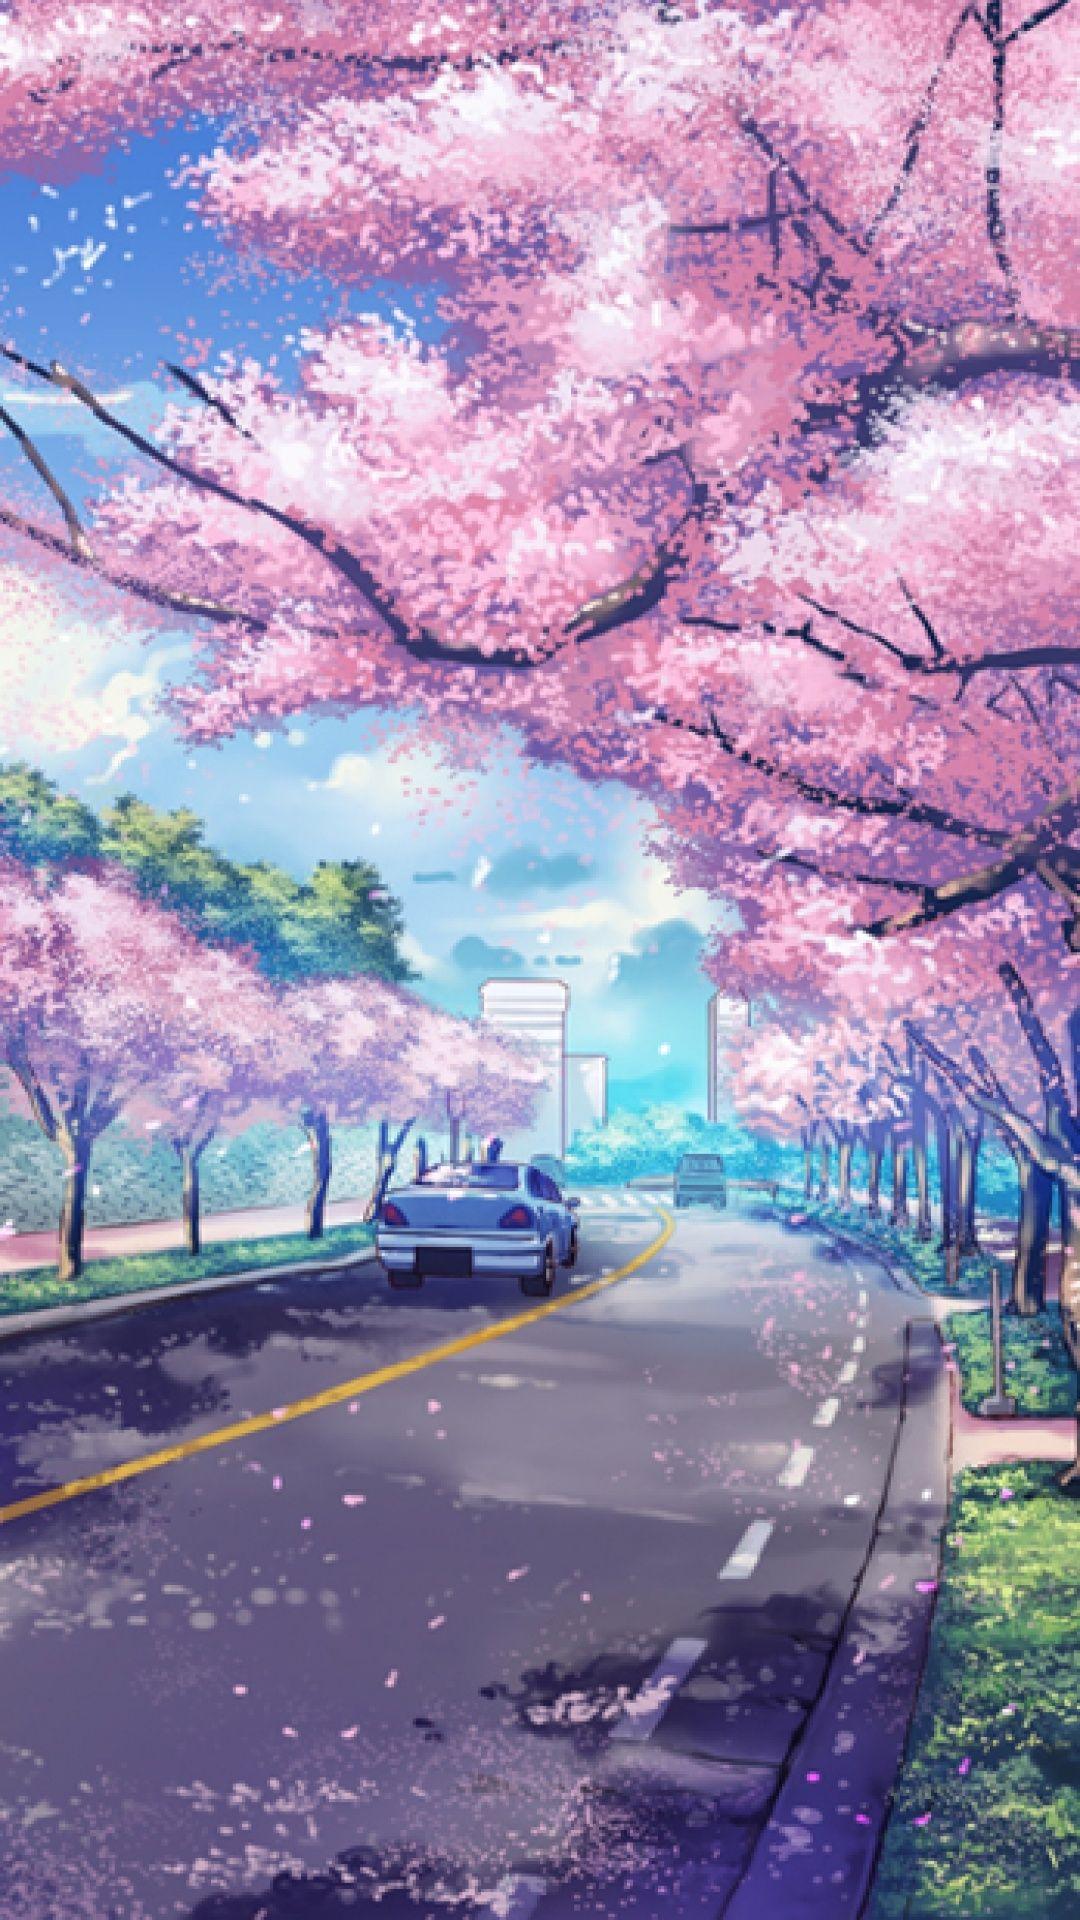 Japanese Anime Wallpaper Hd - Anime Wallpaper